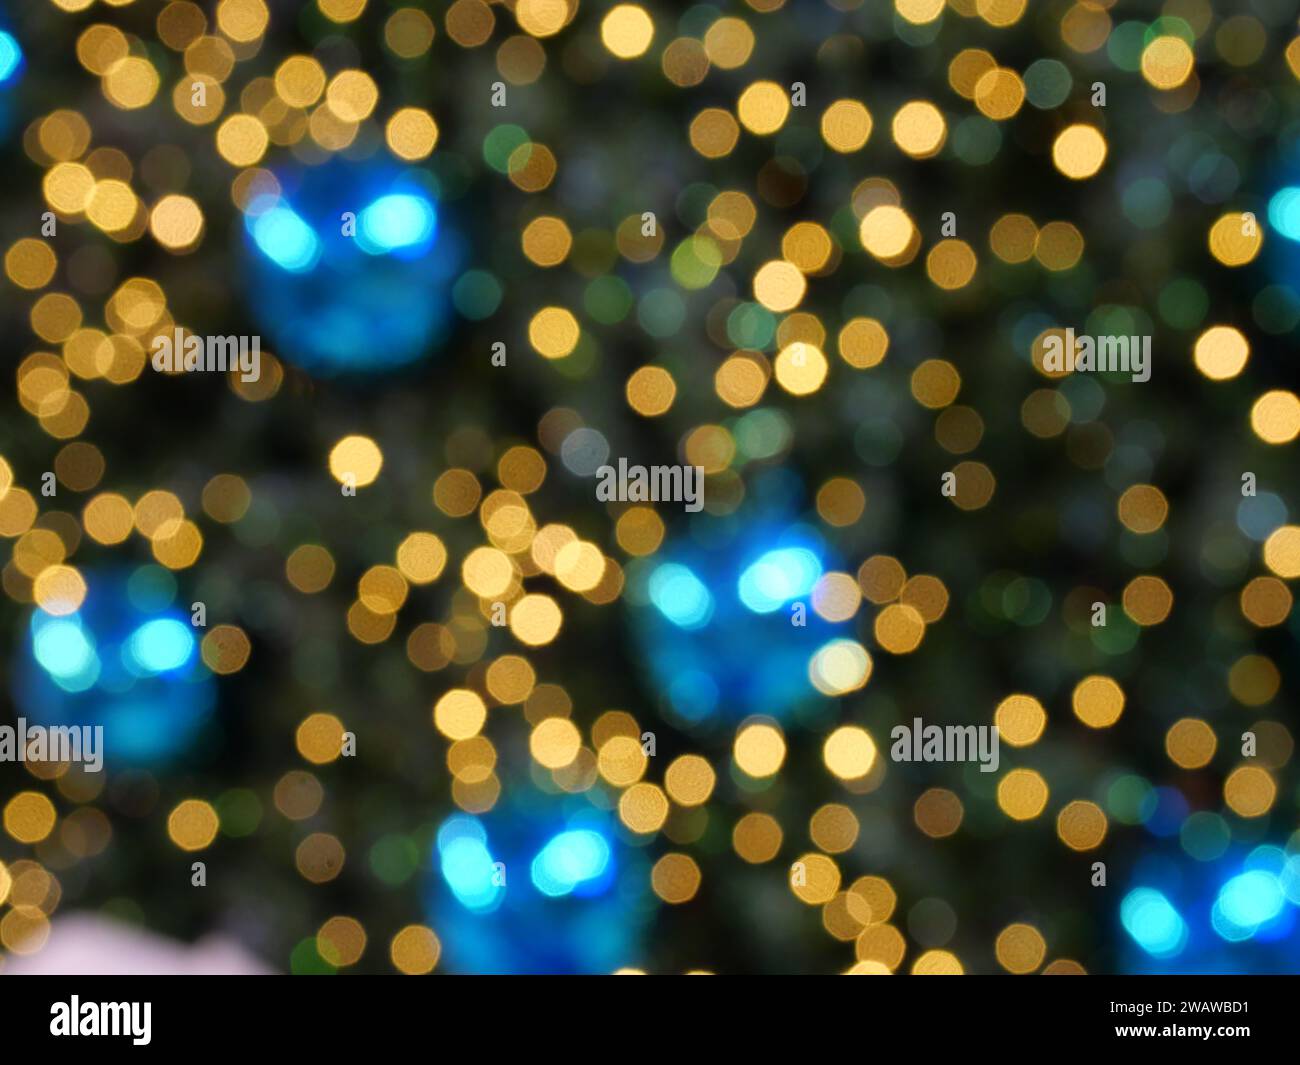 Cercles bleus et jaunes répartis sur la surface de couleur verte et noire, fond lumineux de ville de nuit pour la célébration de la saison des fêtes Banque D'Images